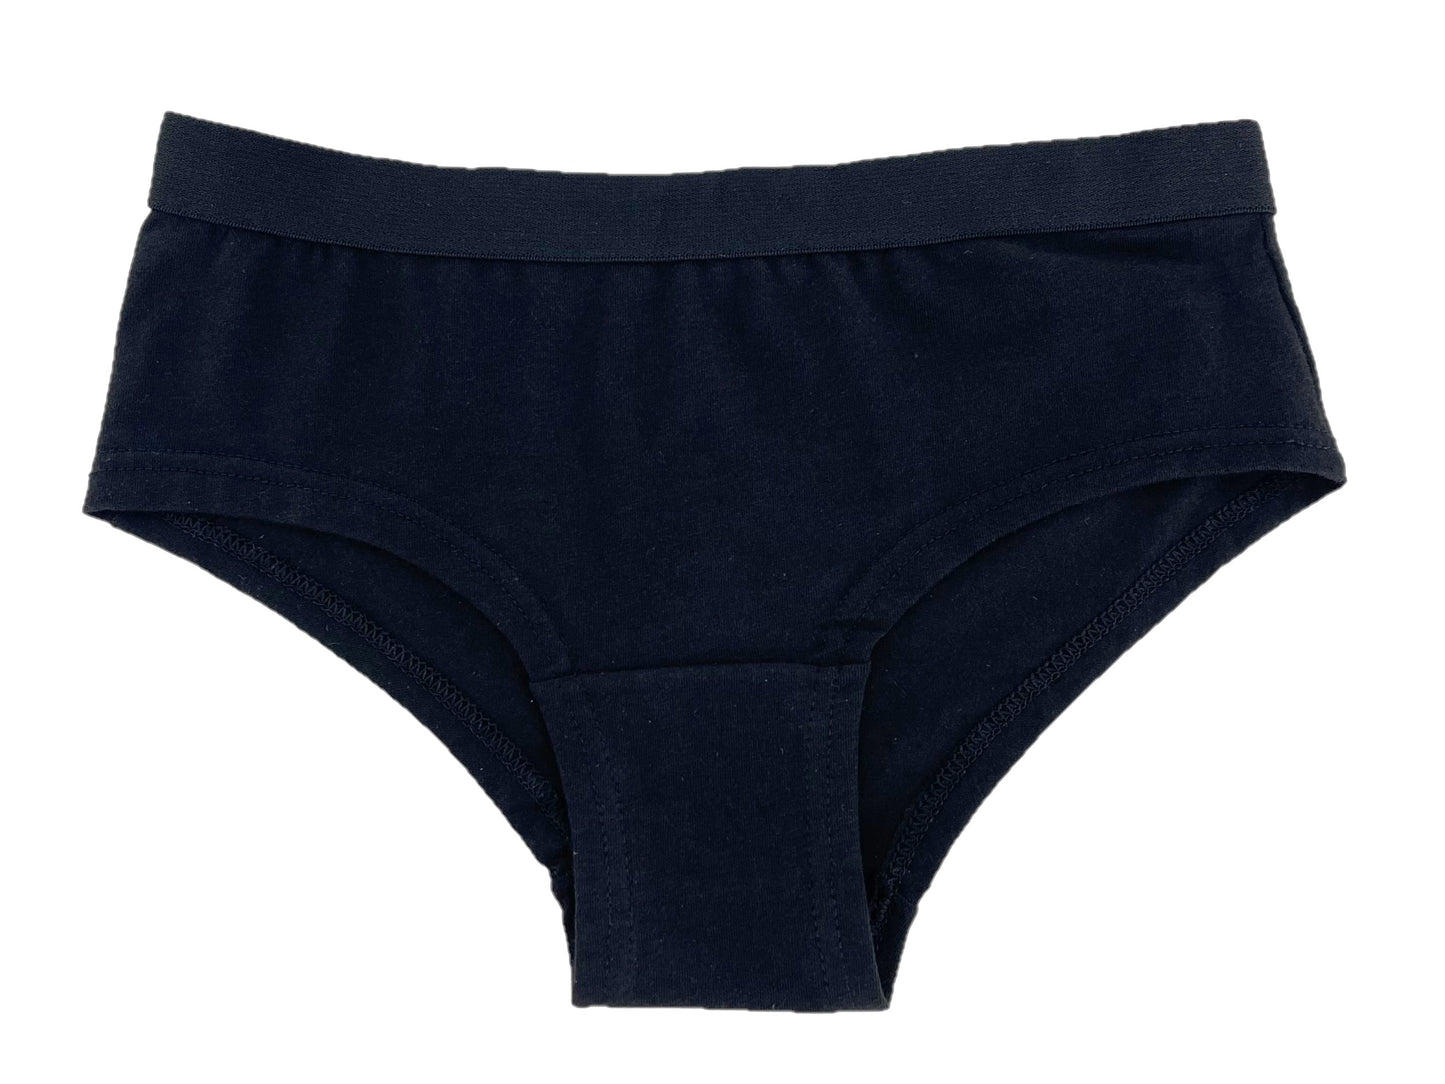 Girls 5 Pack Black Stretch Cotton Knickers Shorts Style Briefs Underwear